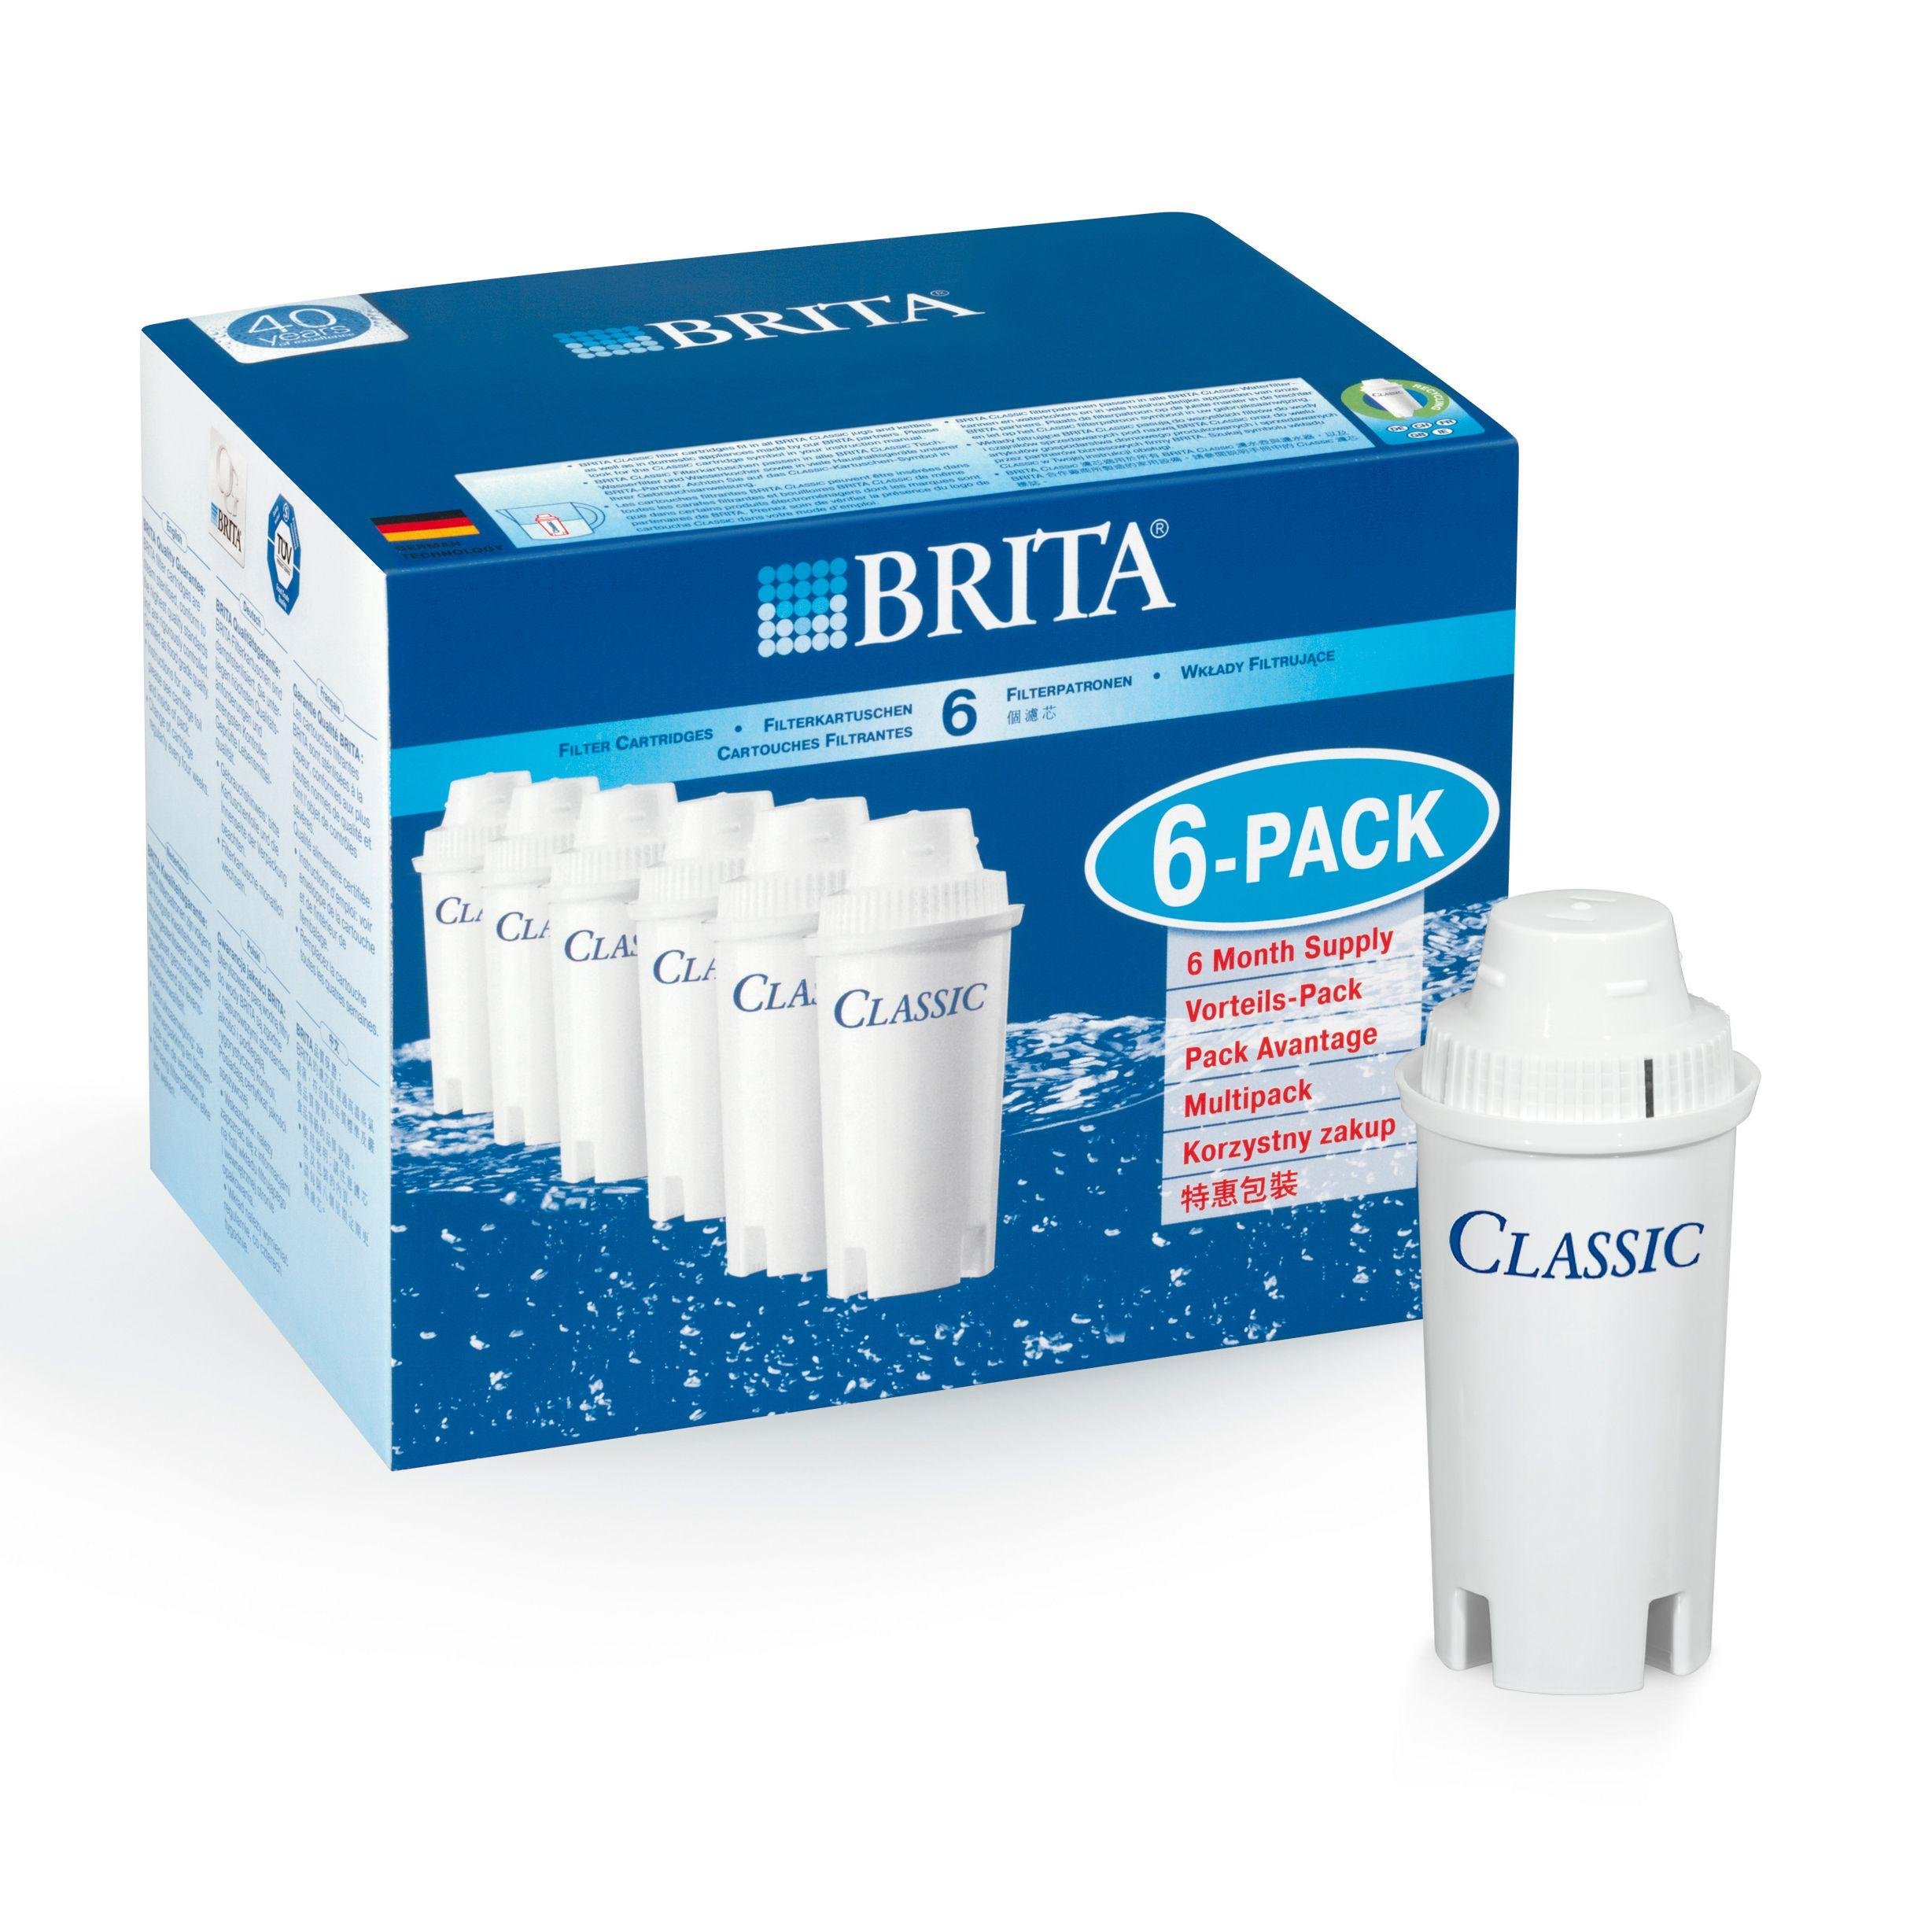 brita-classic-water-filter-cartridges-reviews